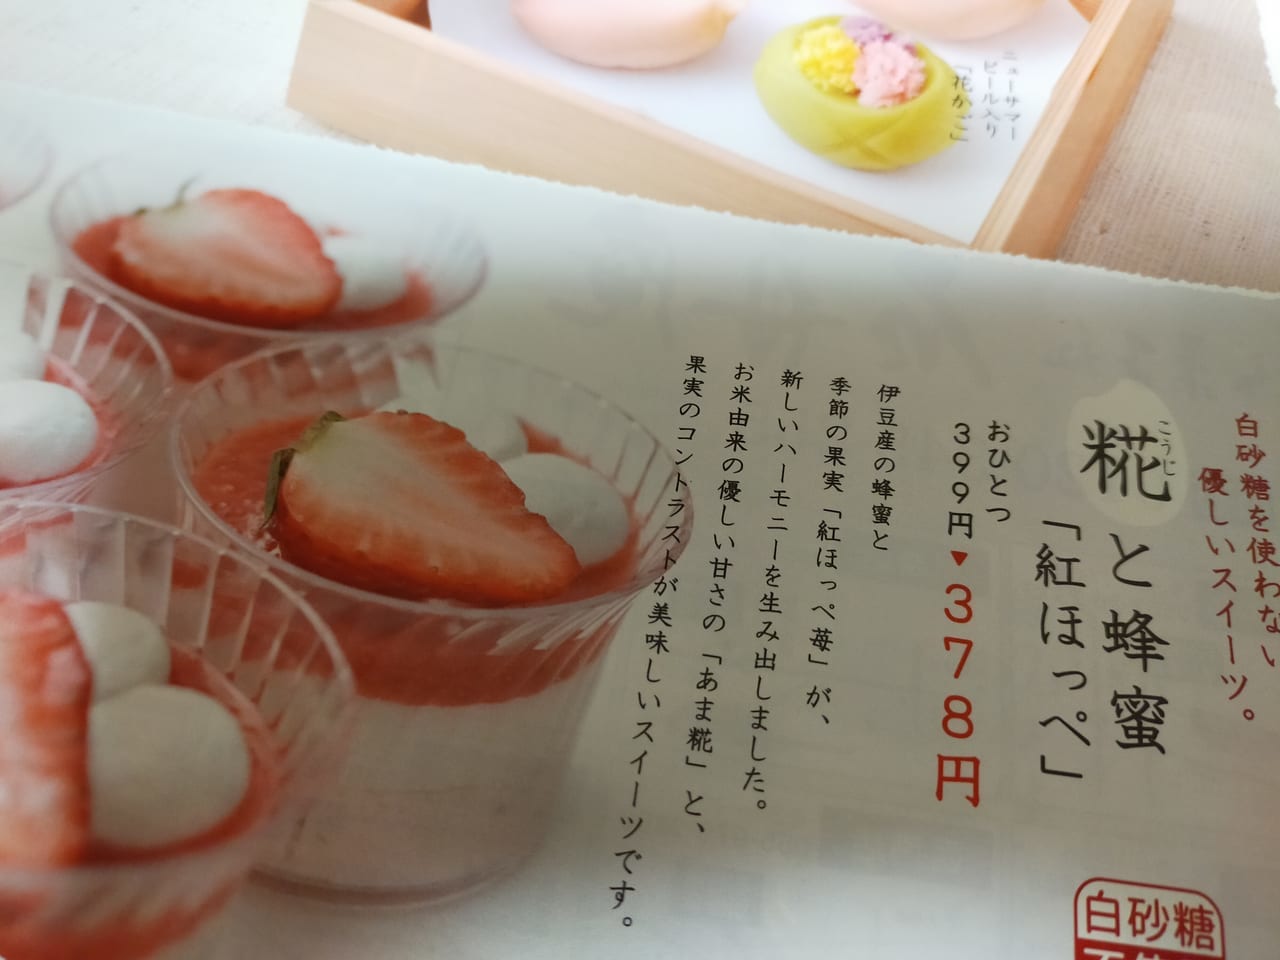 「石舟庵 ラスカ平塚店」が白砂糖不使用の体に優しいヘルシーな和菓子を販売しています！